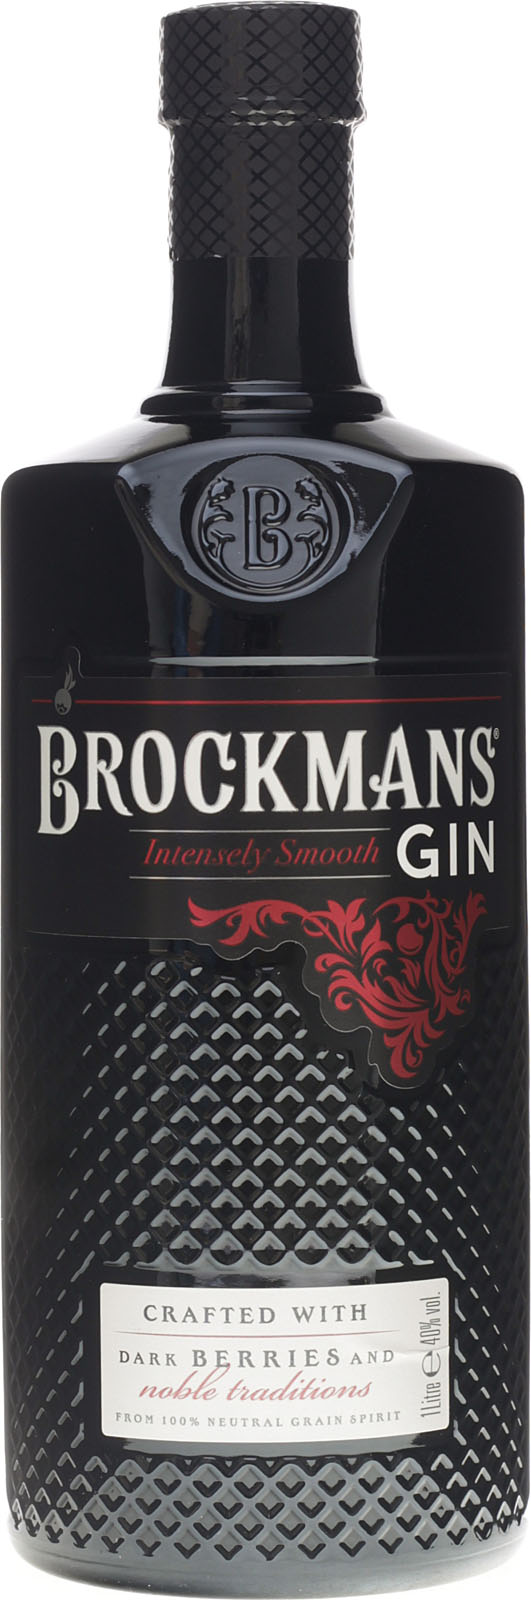 Shop Premium günstig Gin Smooth Intensely Brockmans im